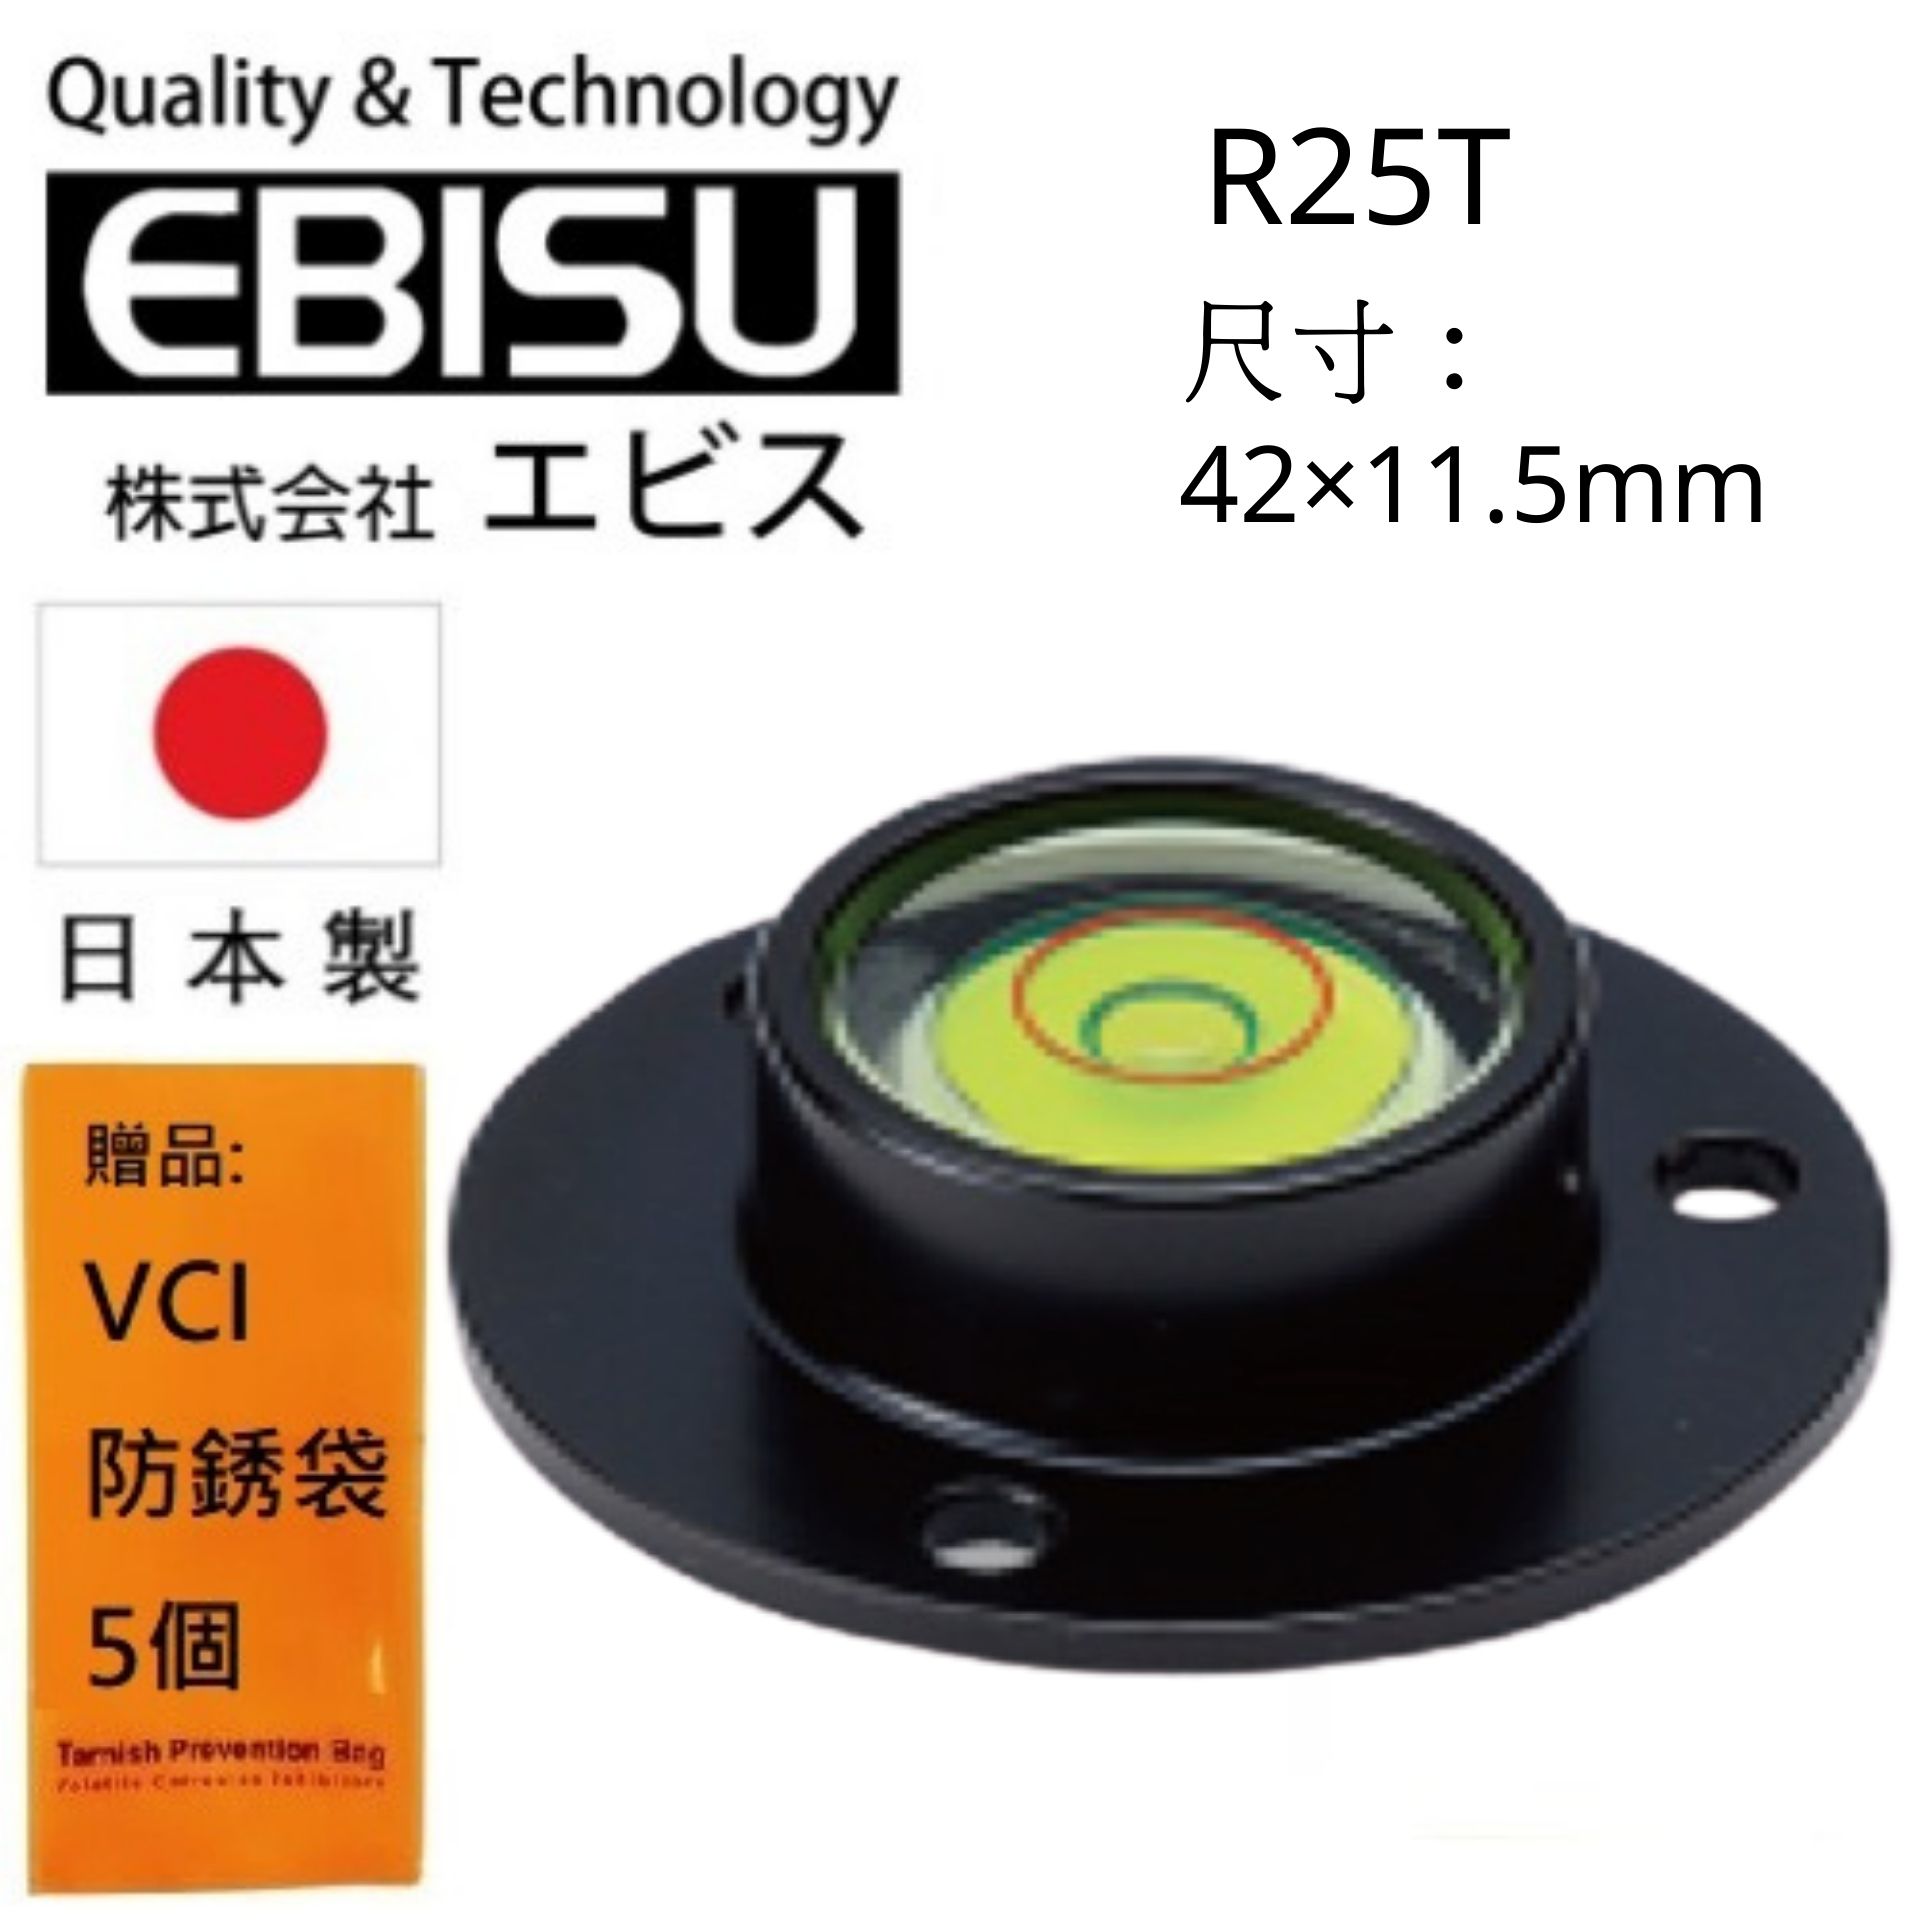 【日本EBISU】 丸型水平氣泡管-鋁框 42×11.5mm R25T 水平液具有夜光 可用於暗處使用